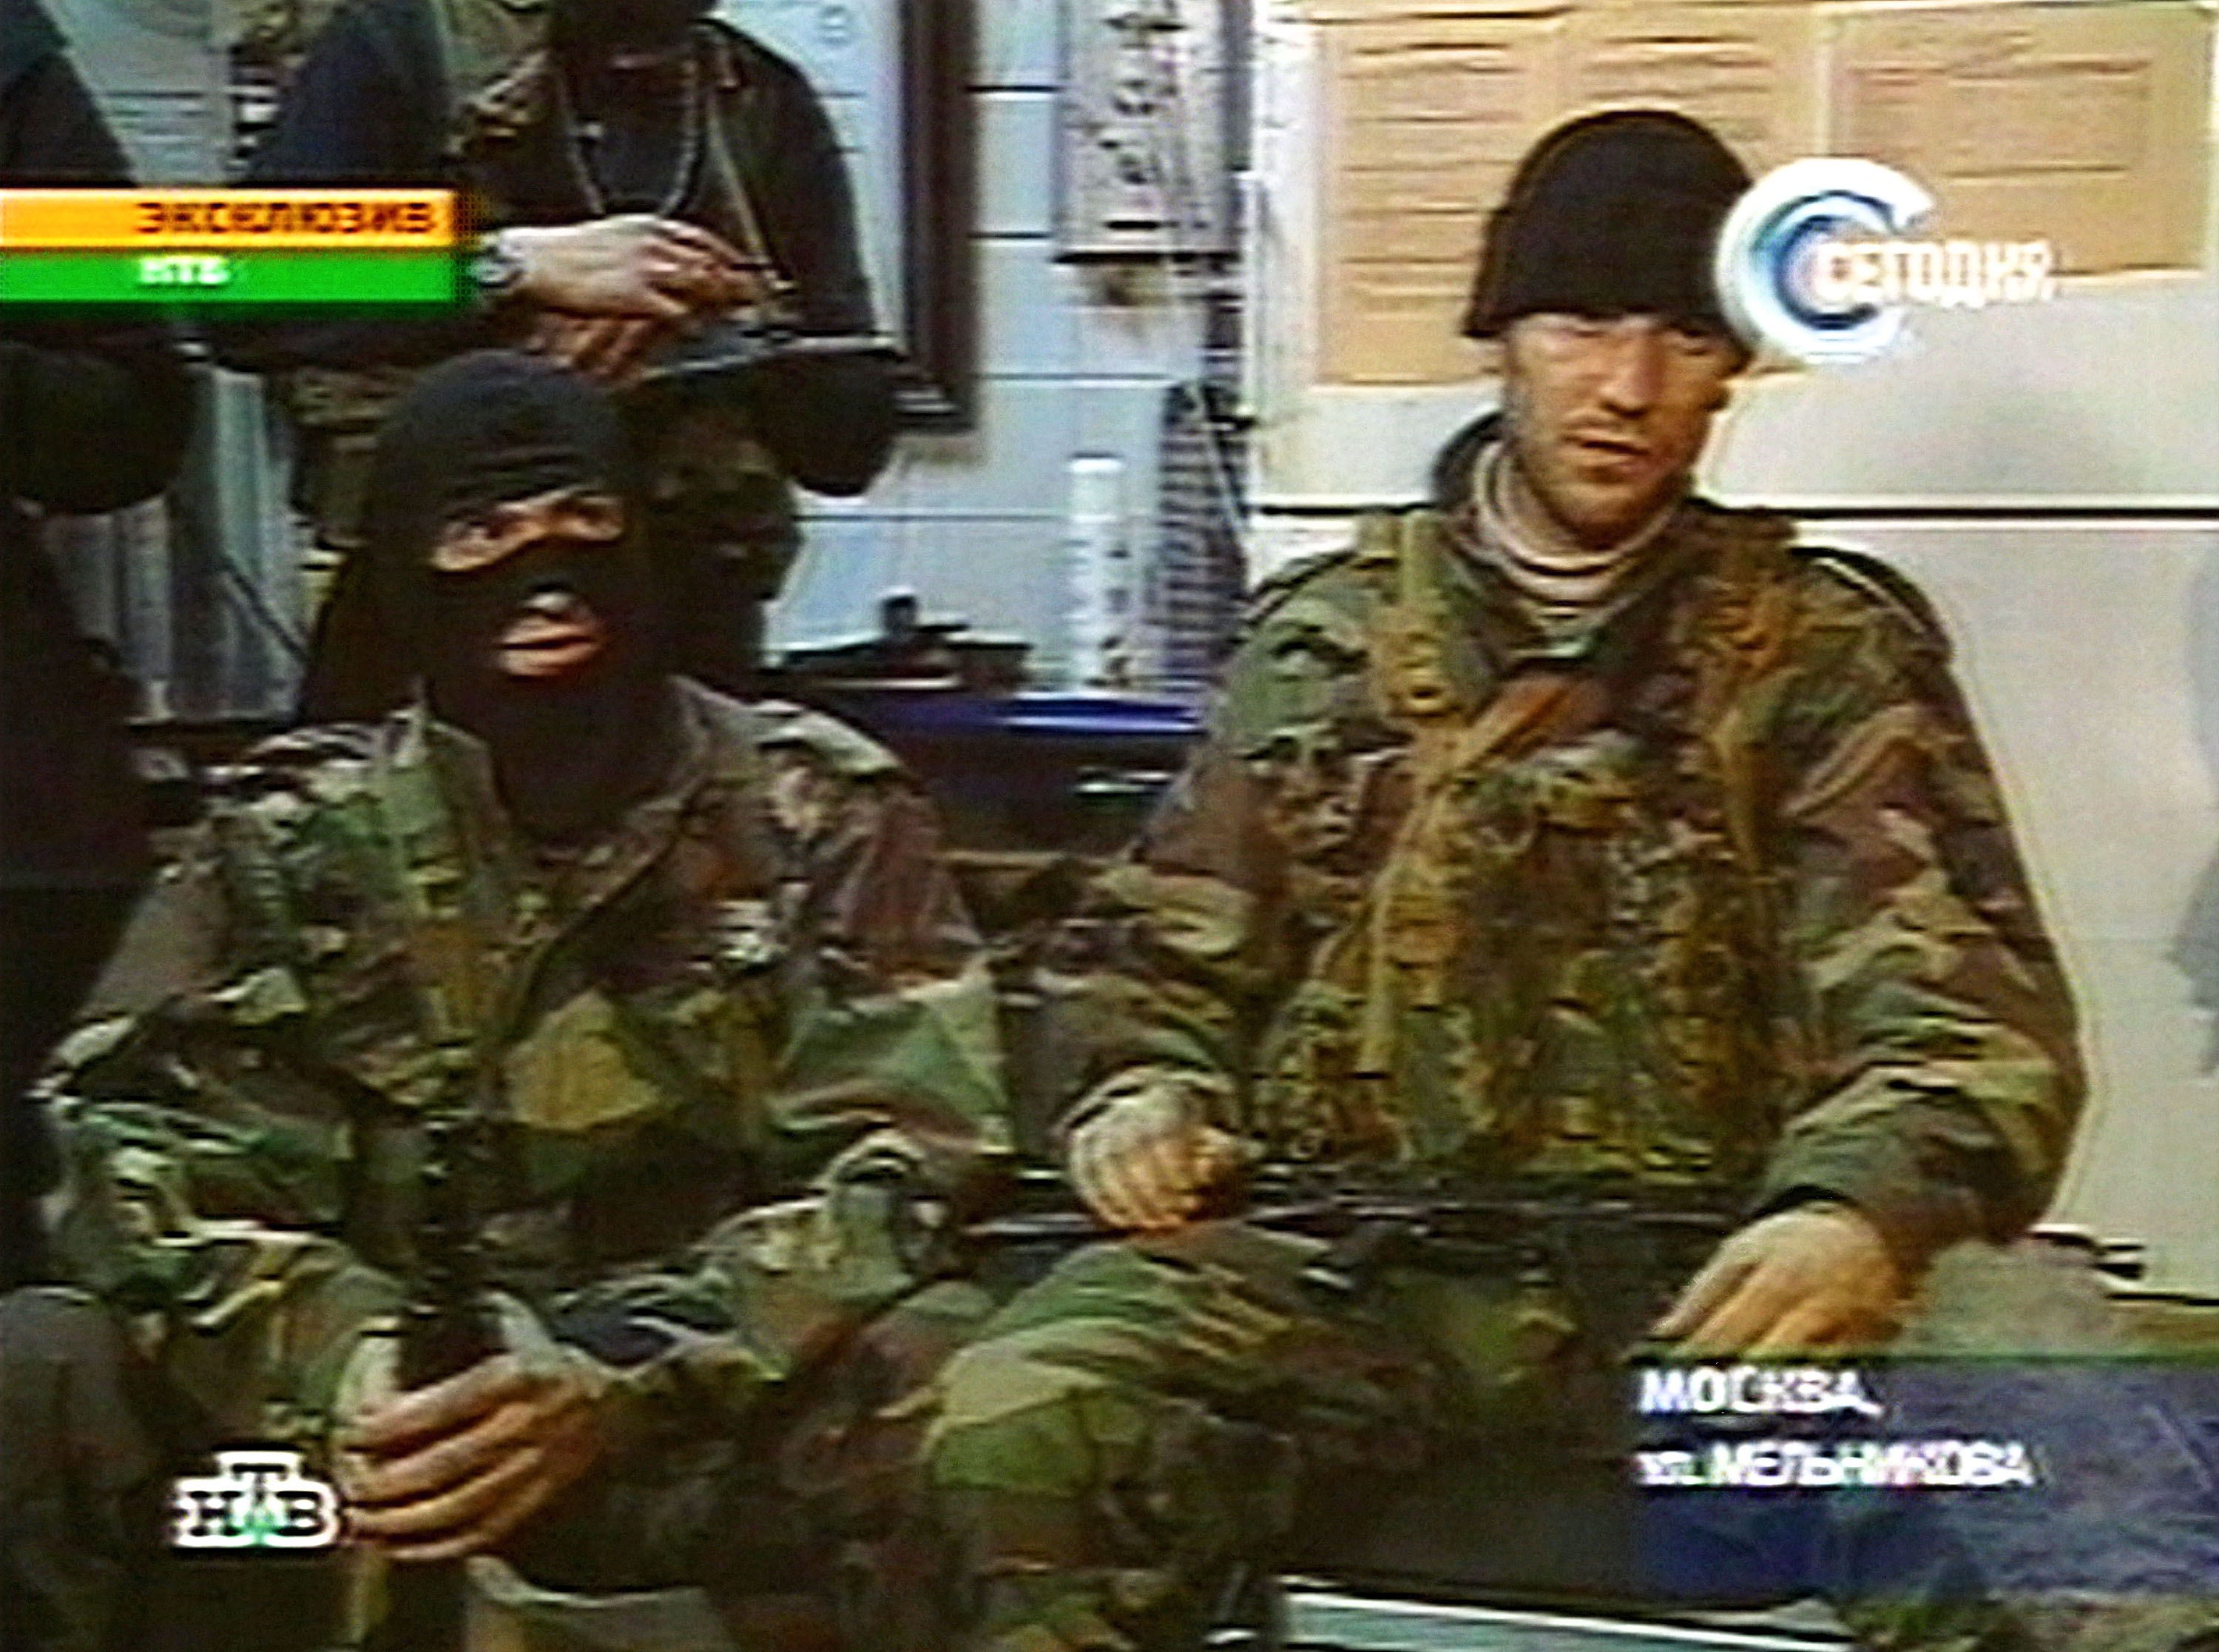 Caputra de video del 25 de octubre, cuando los chechenos separatistas hablaba con un canal de televisión, mientras tenían como rehenes a 600 persona. Amenazaban con volar el teatro a menos que las tropas rusas abandonaran Chechenia. (Photo by NTV/Getty Images)